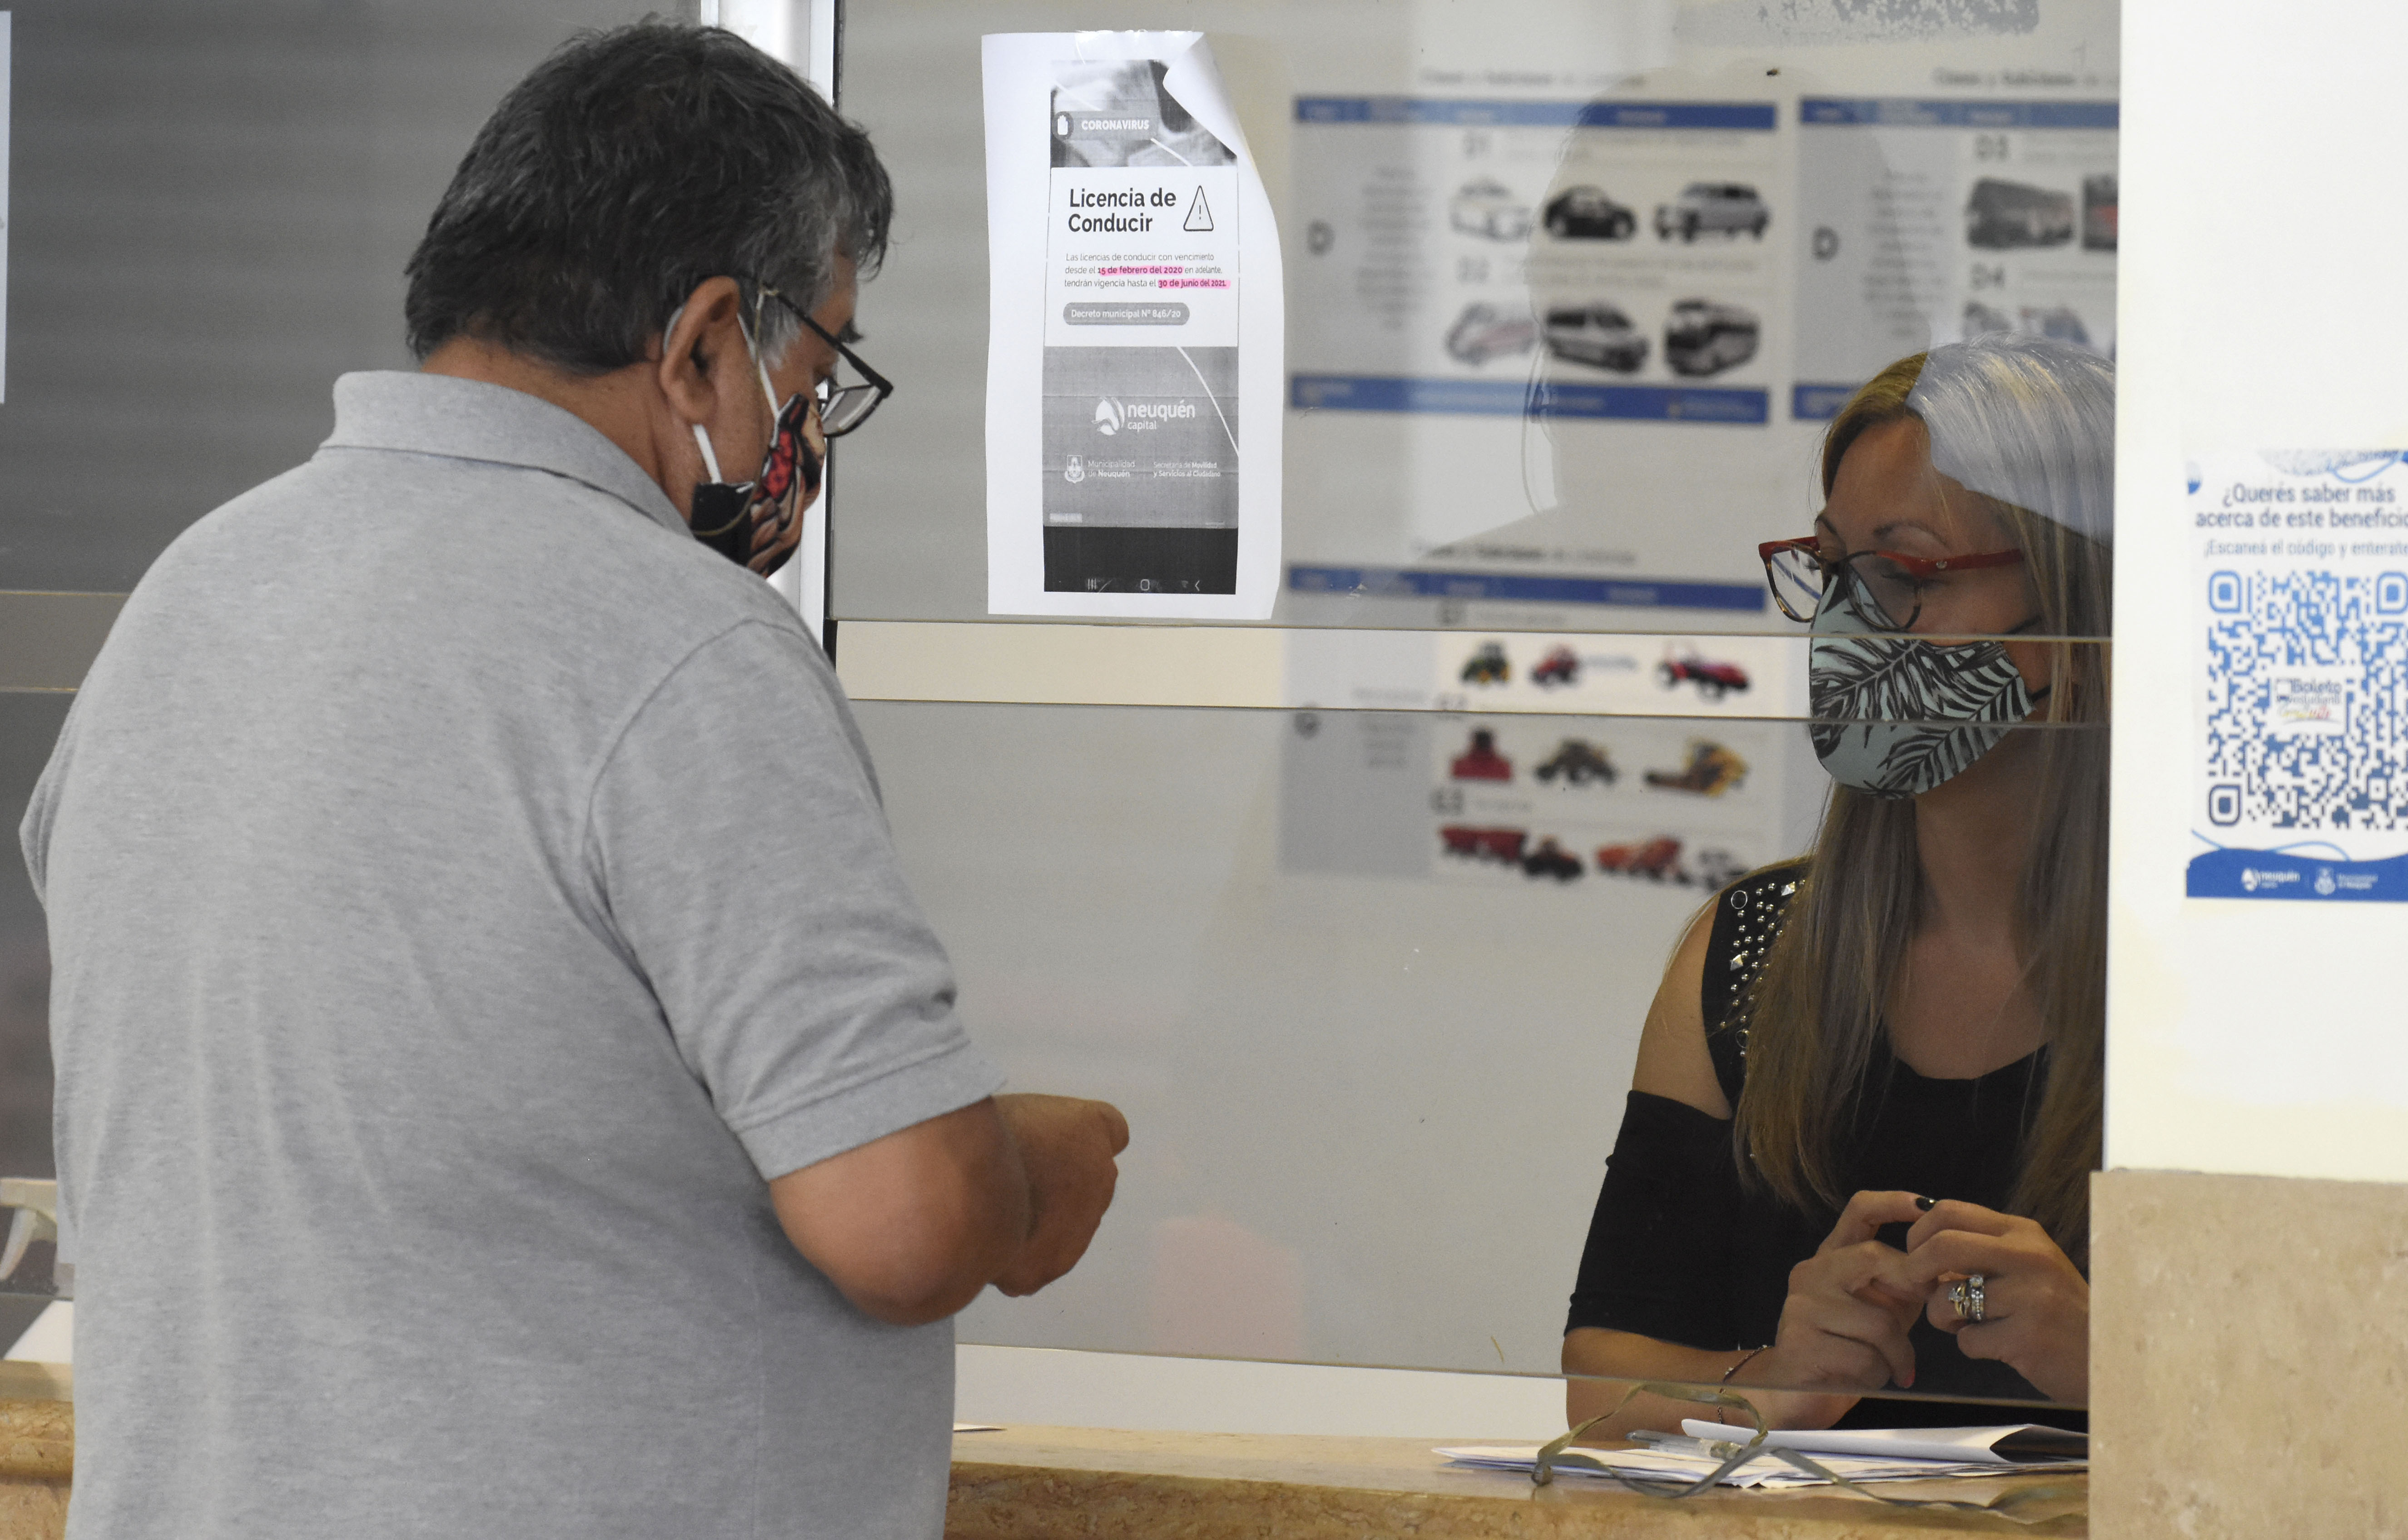 La renovación de las licencias de conducir continuará virtual en Neuquén. (foto Florencia Salto)